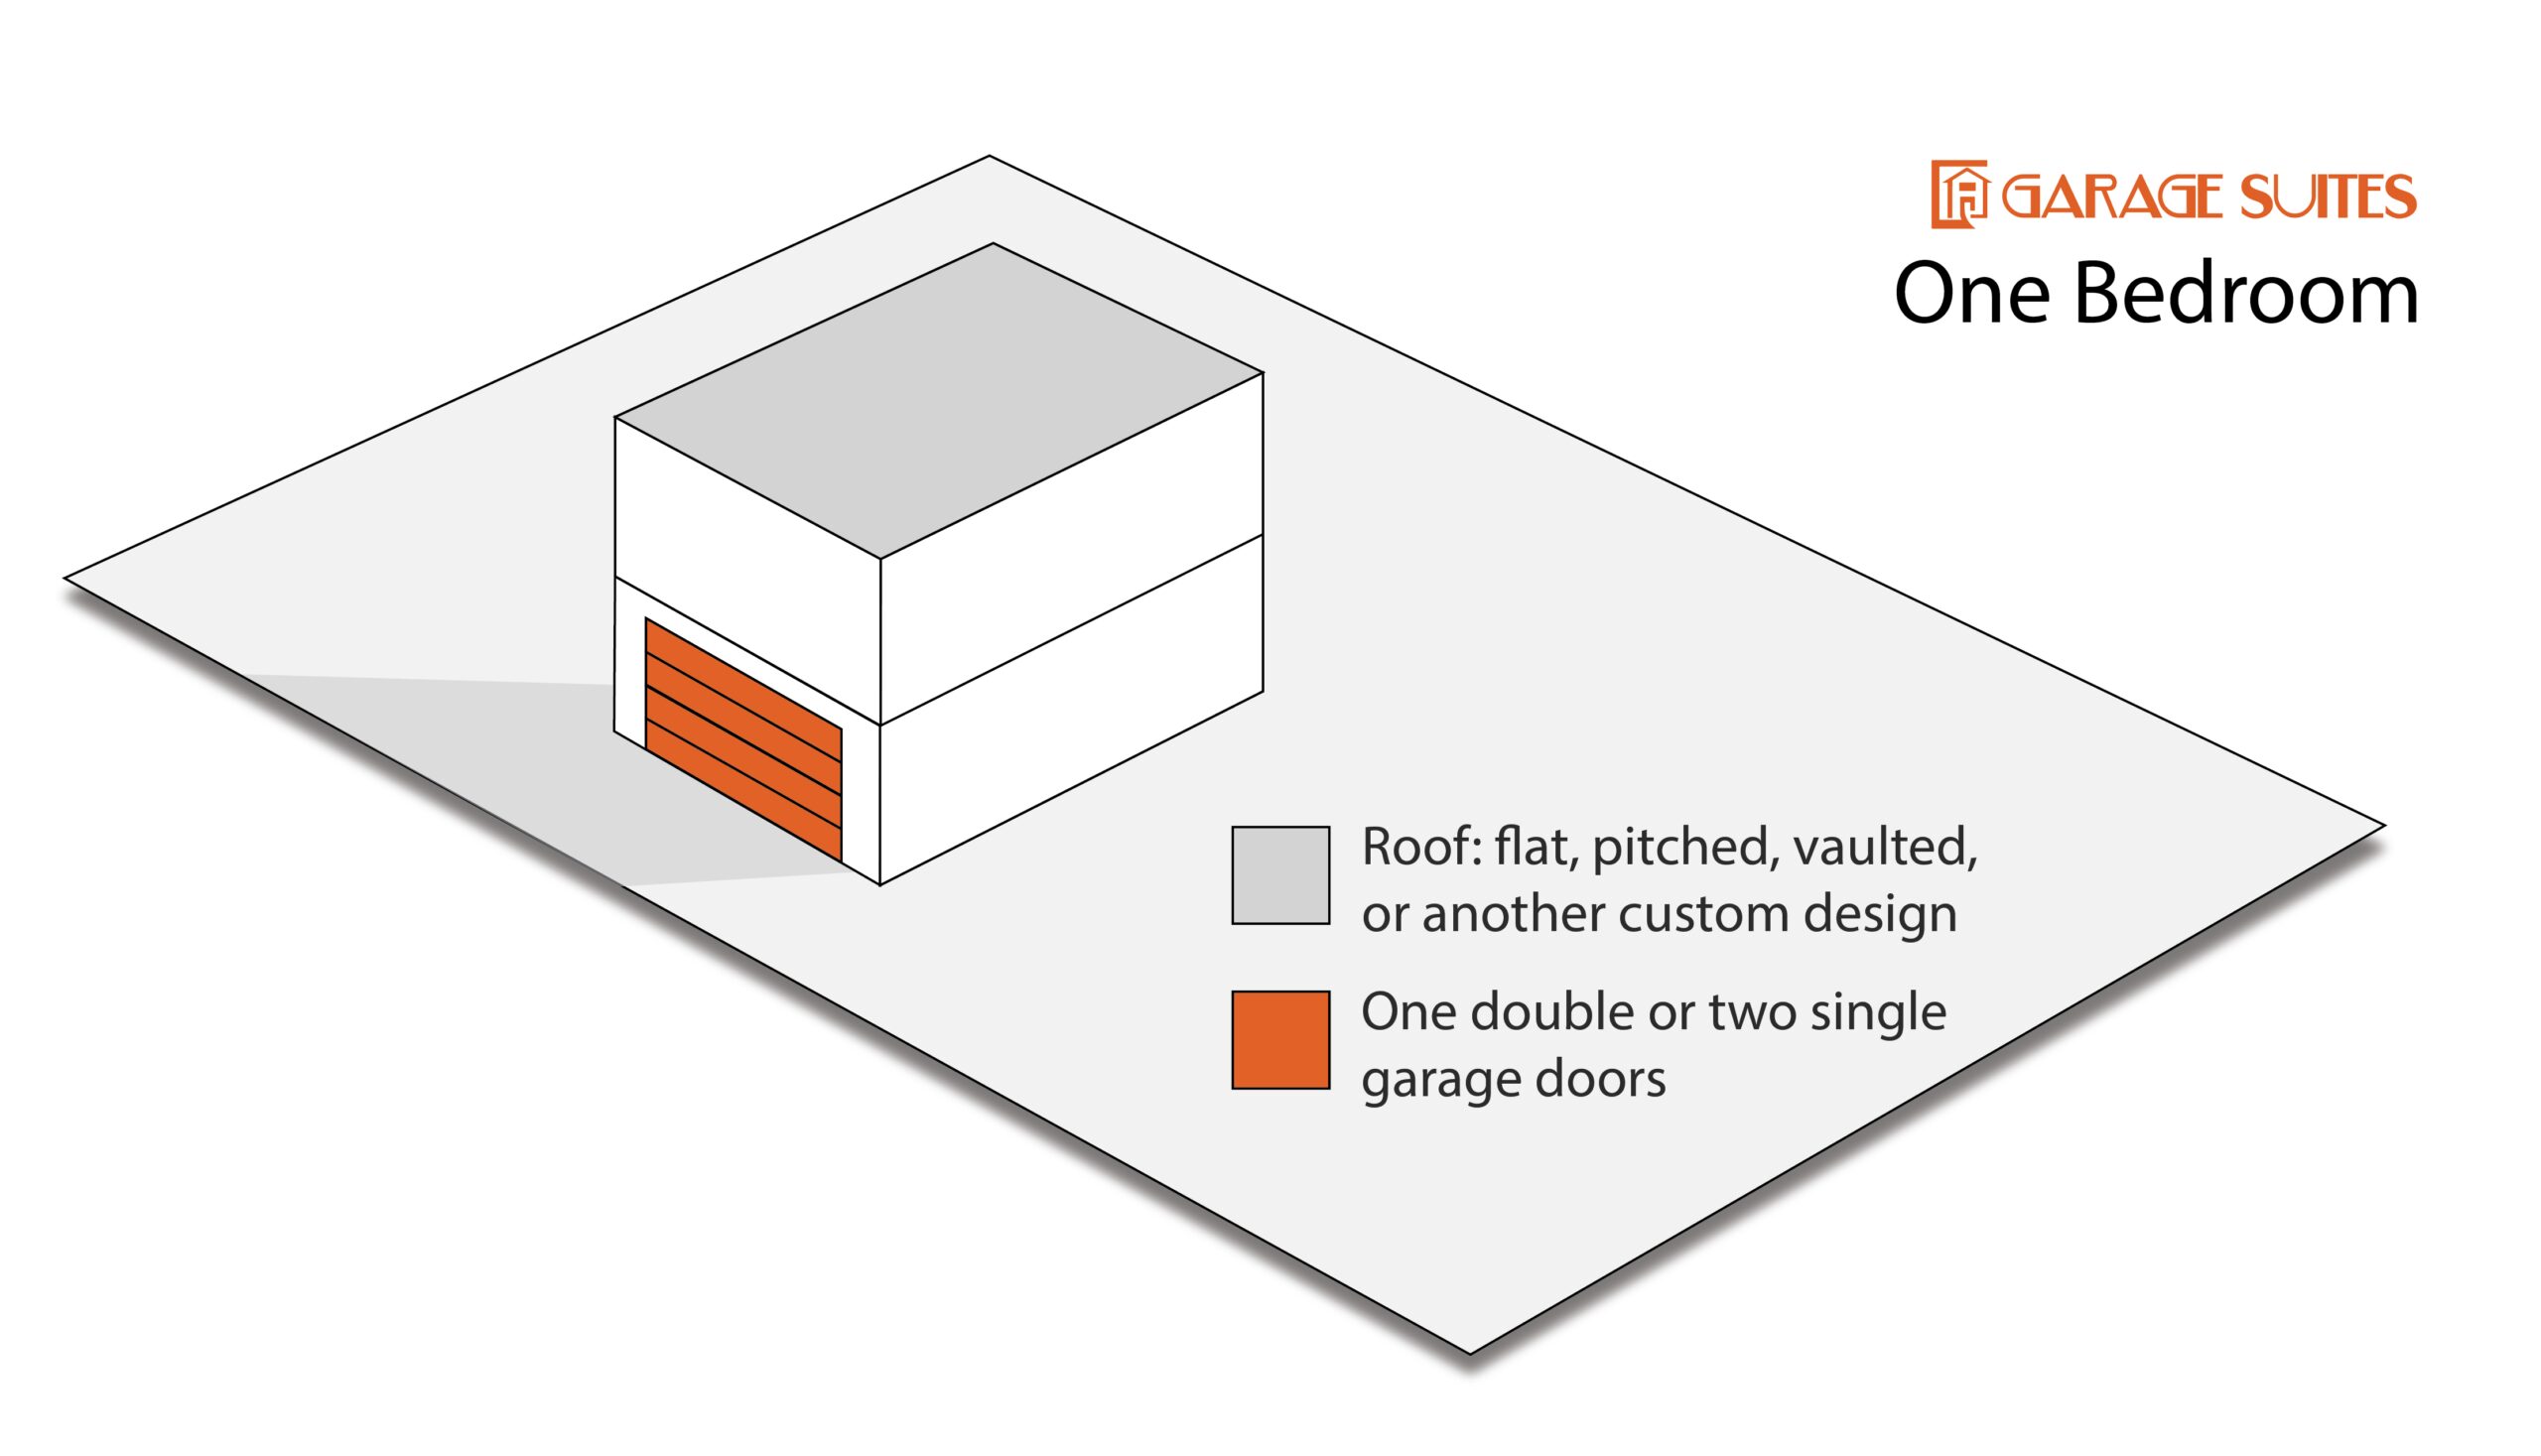 Garage Suite Configuration - One Bedroom